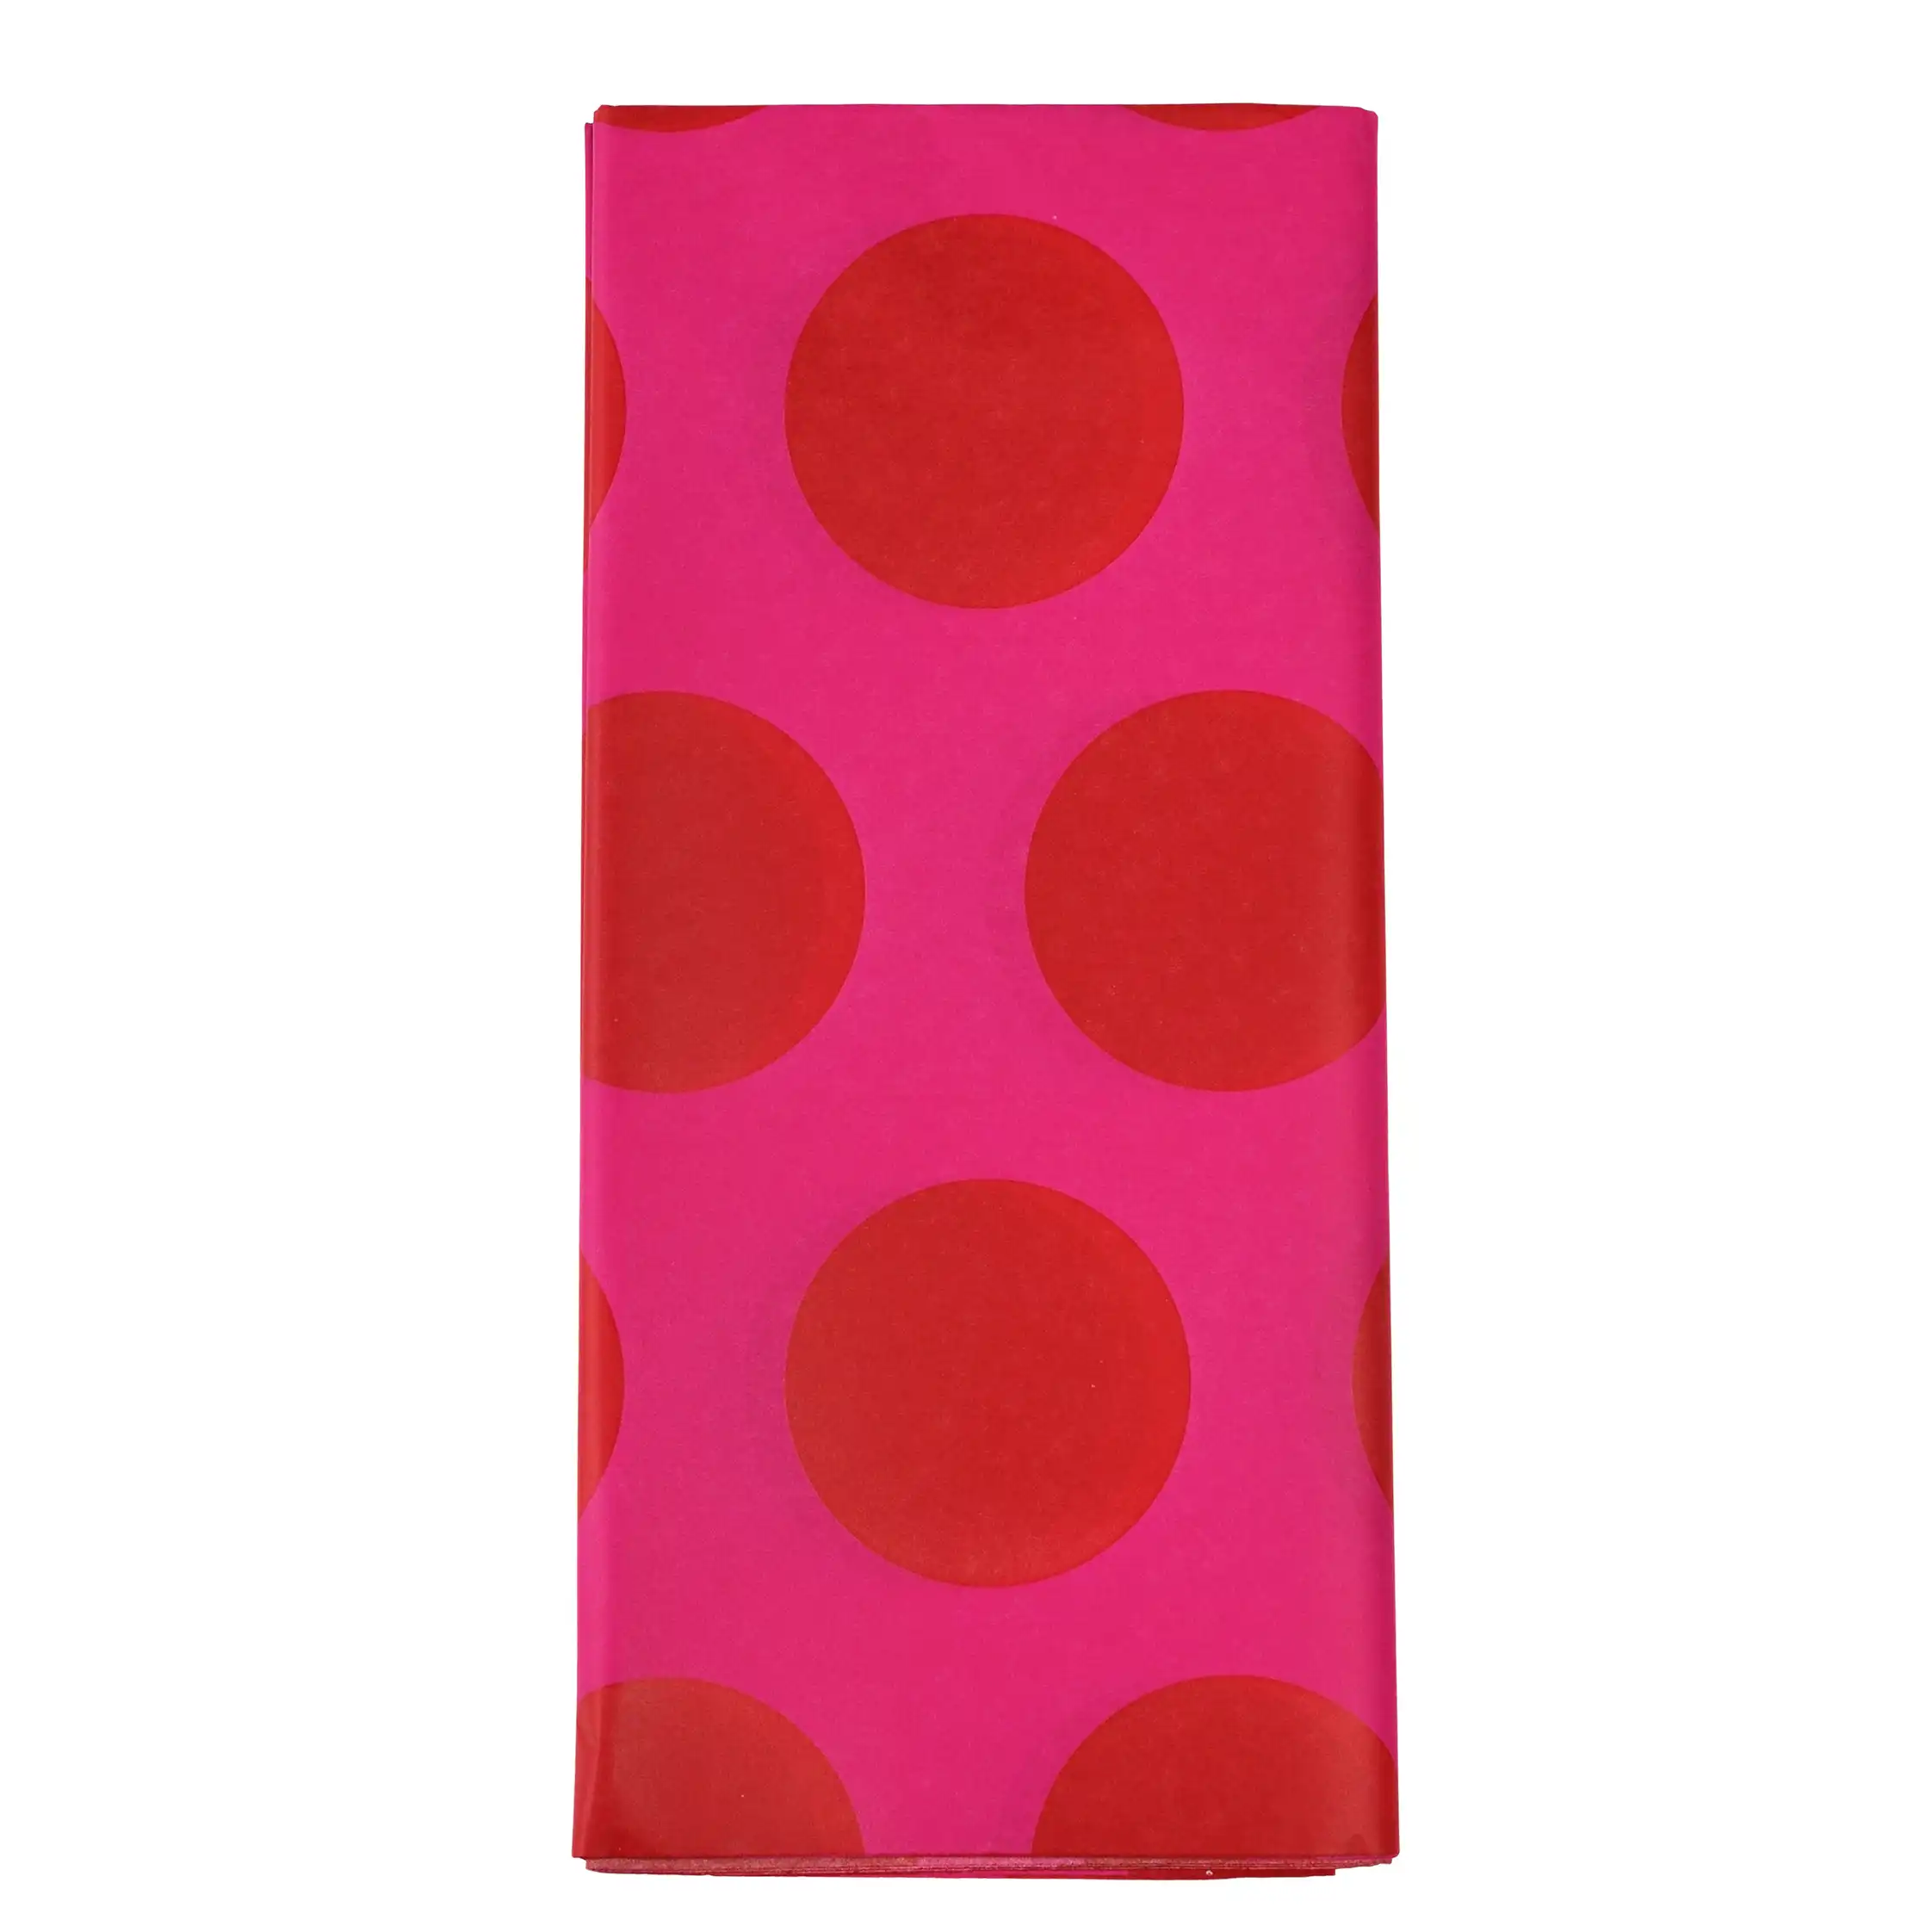 seidenpapier spotlight rot auf pink (10 bögen)